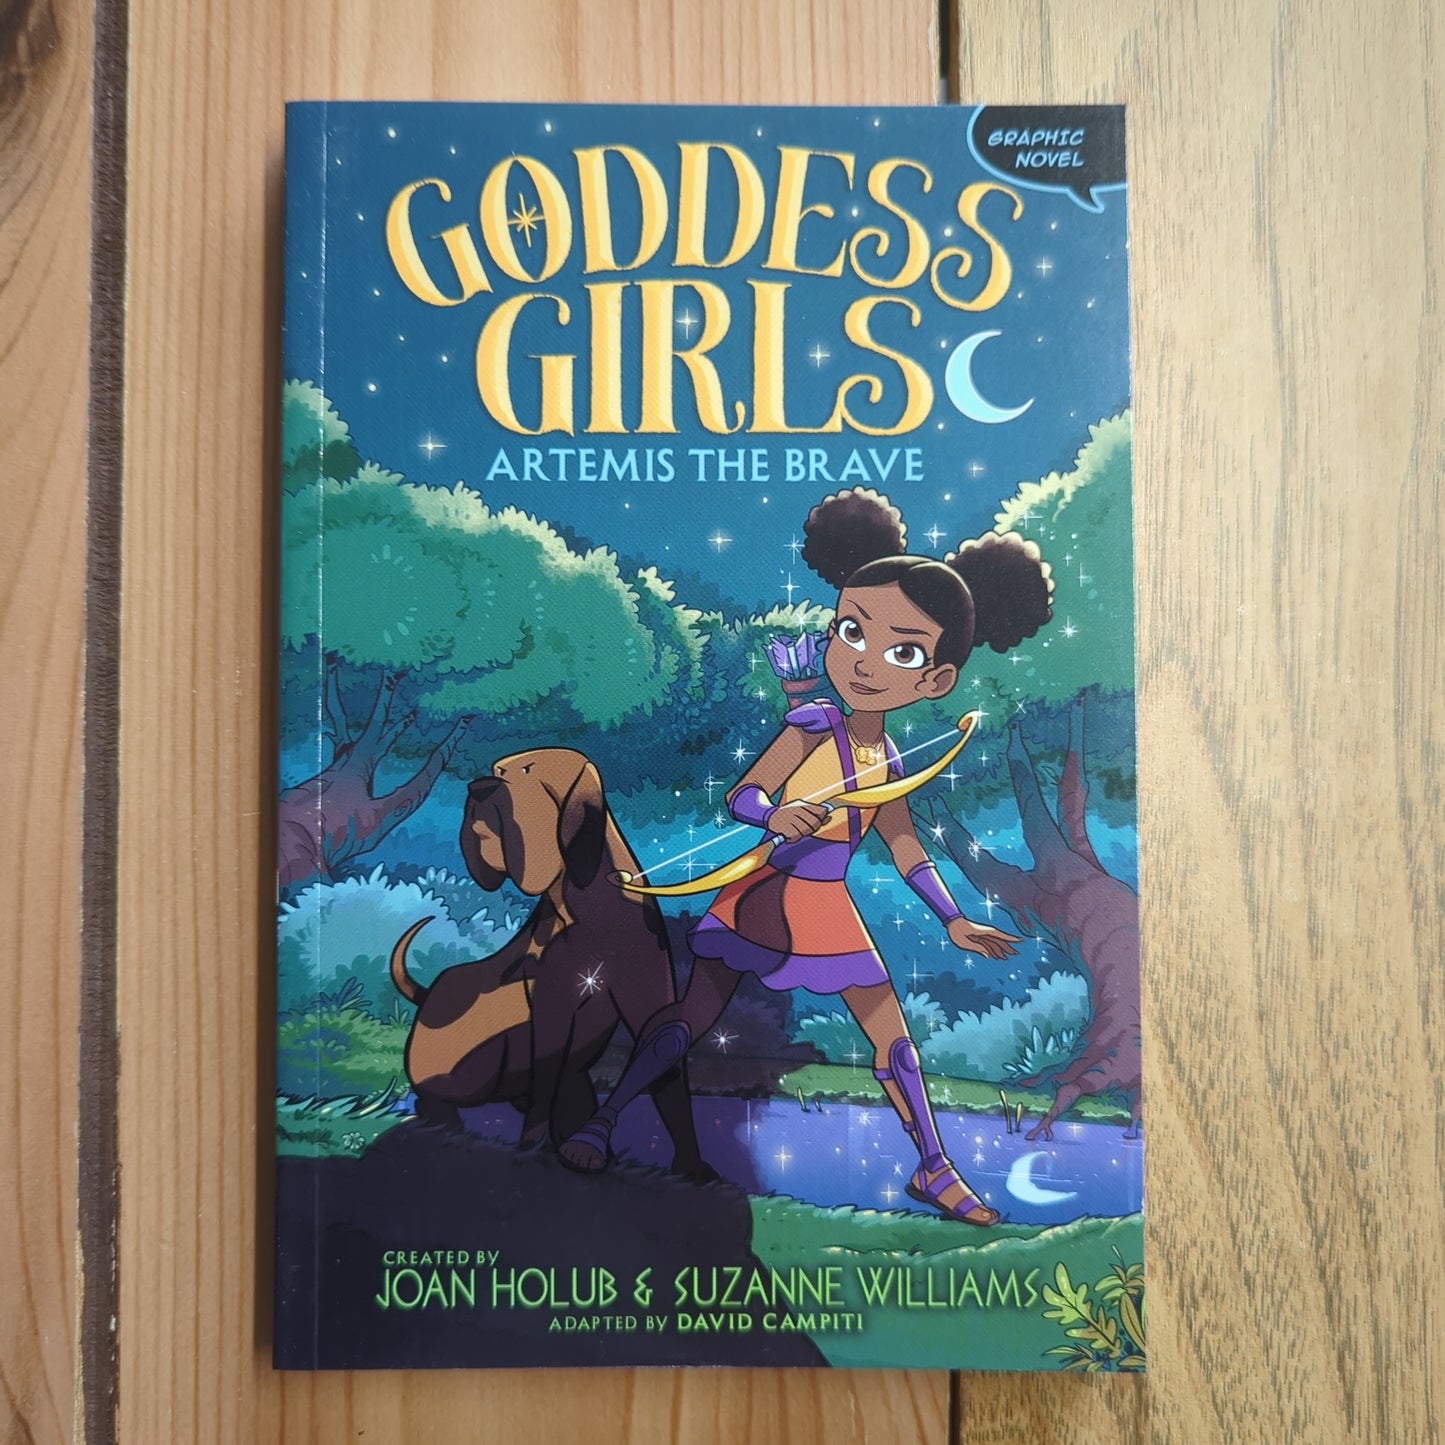 Artemis the Brave (Goddess Girls Graphic Novel #4)